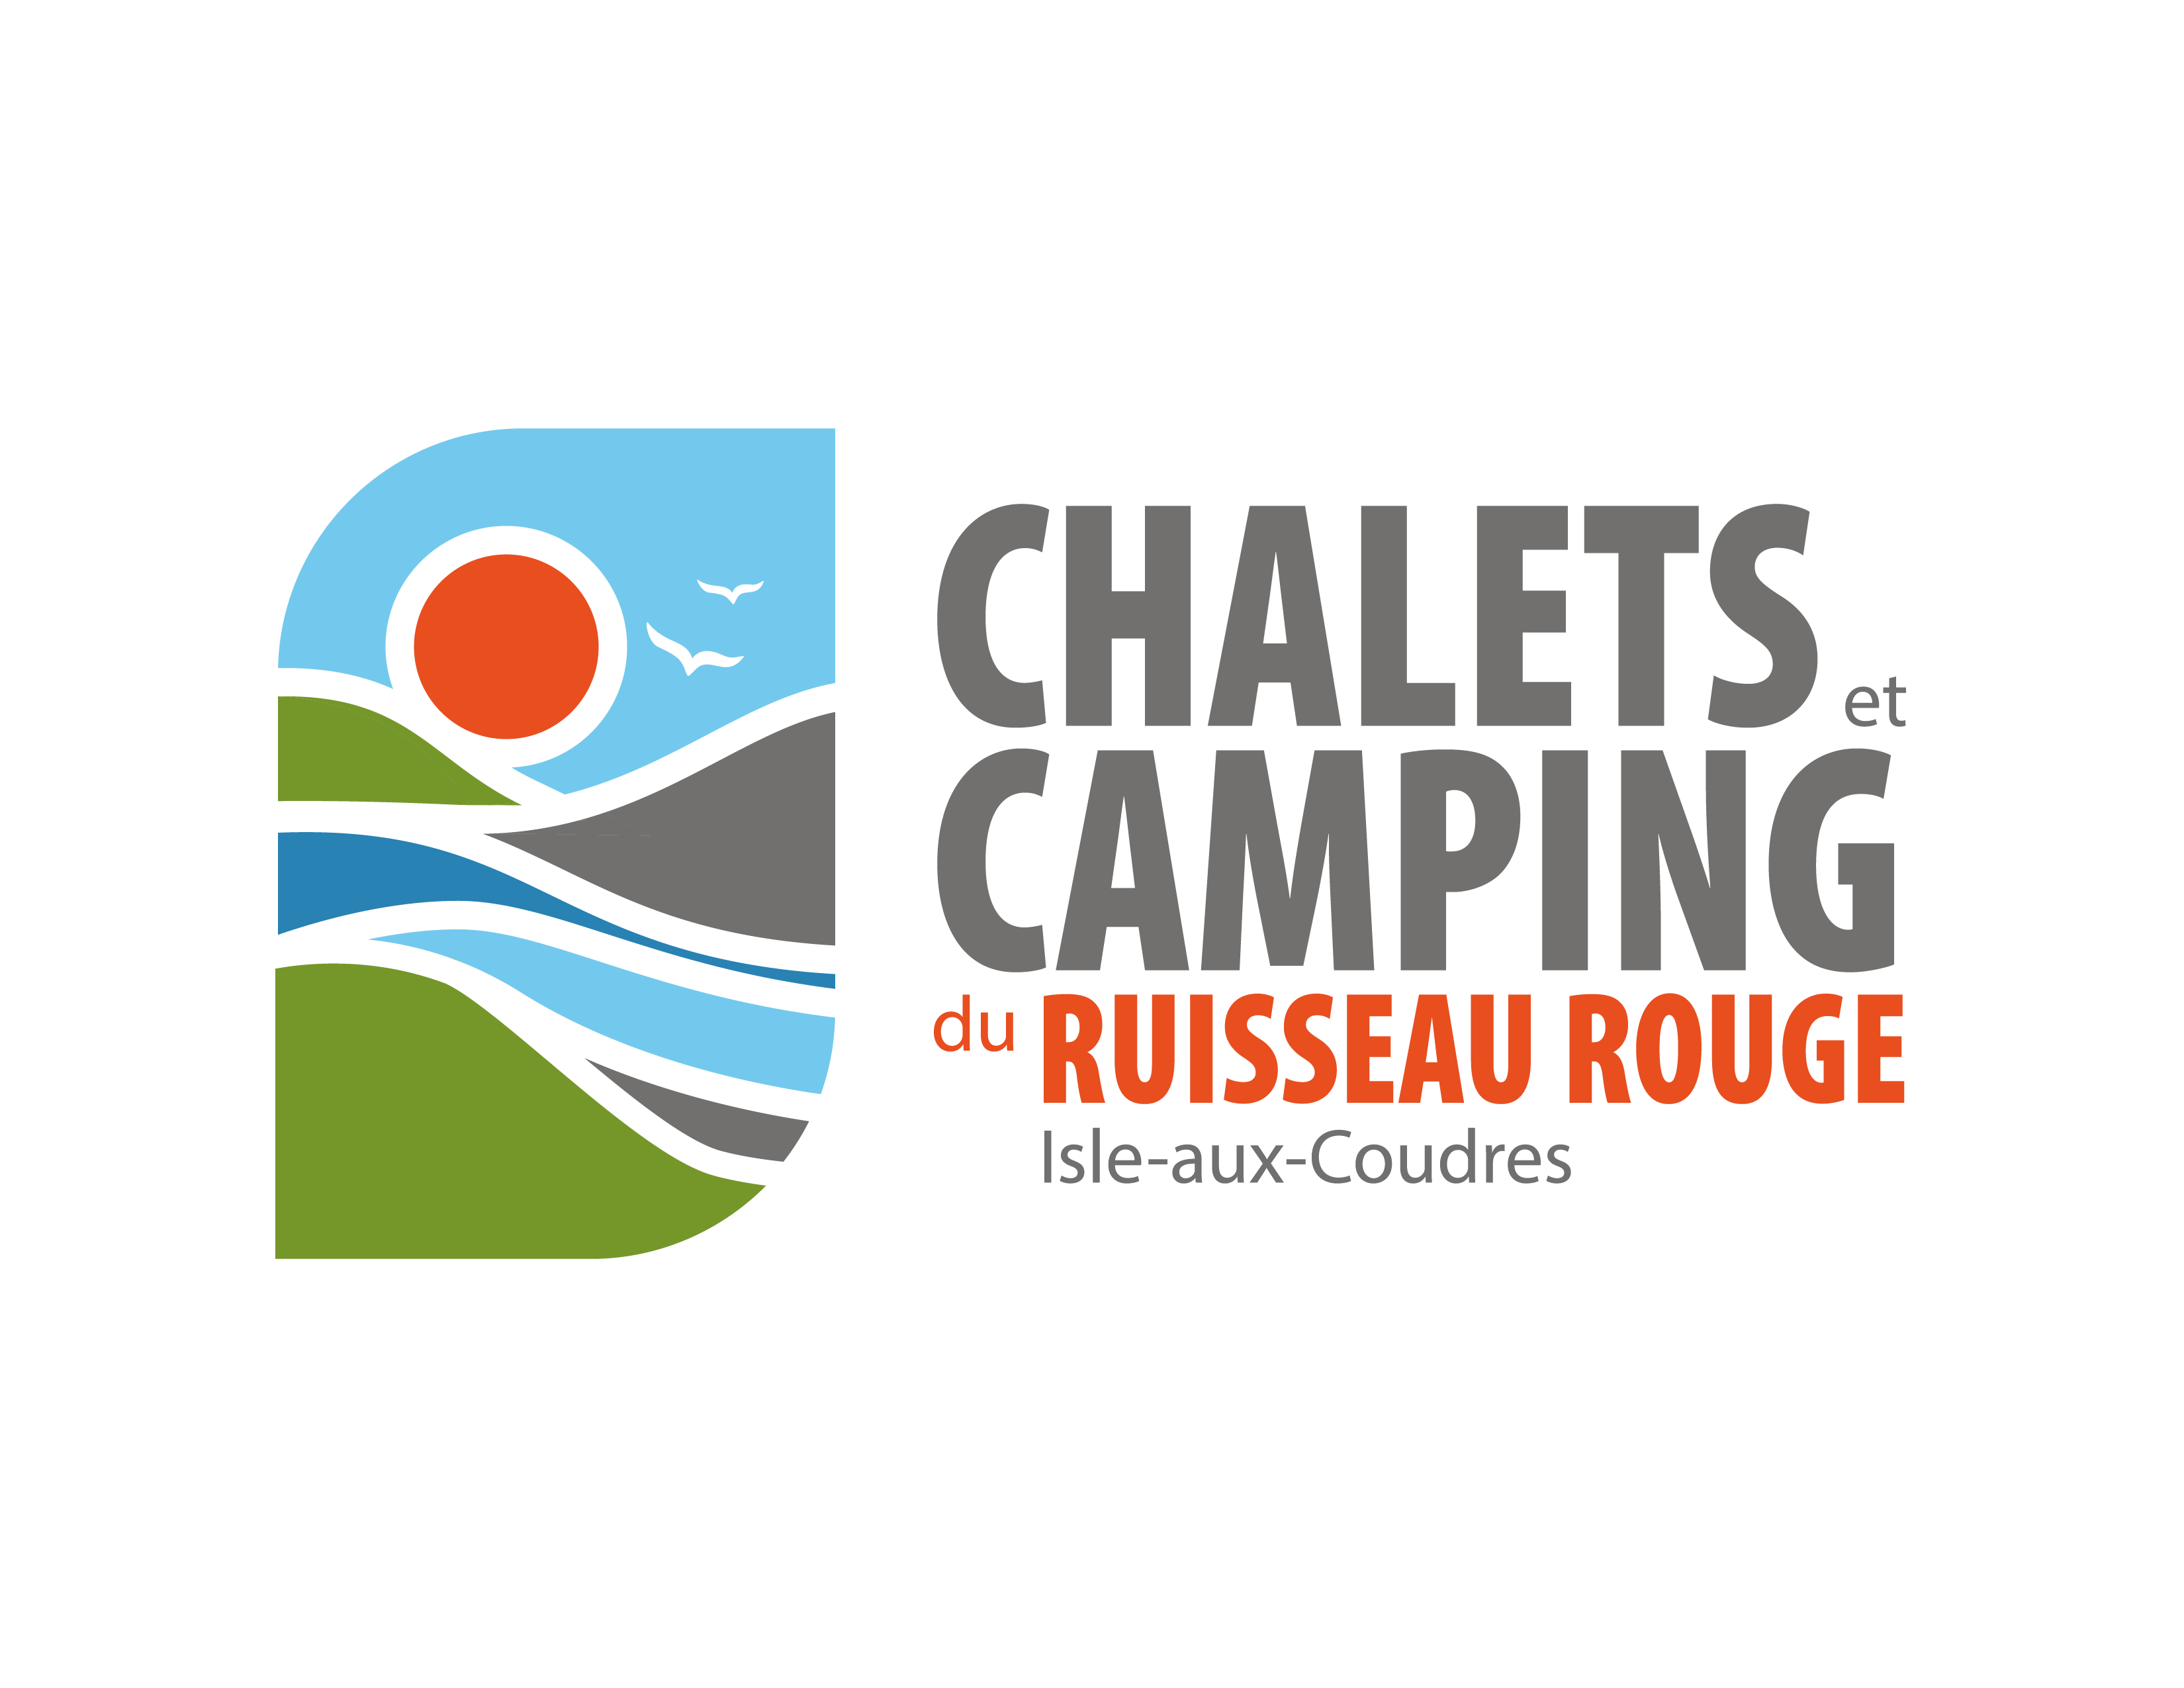 Logo Chalets et Camping du ruisseau rouge